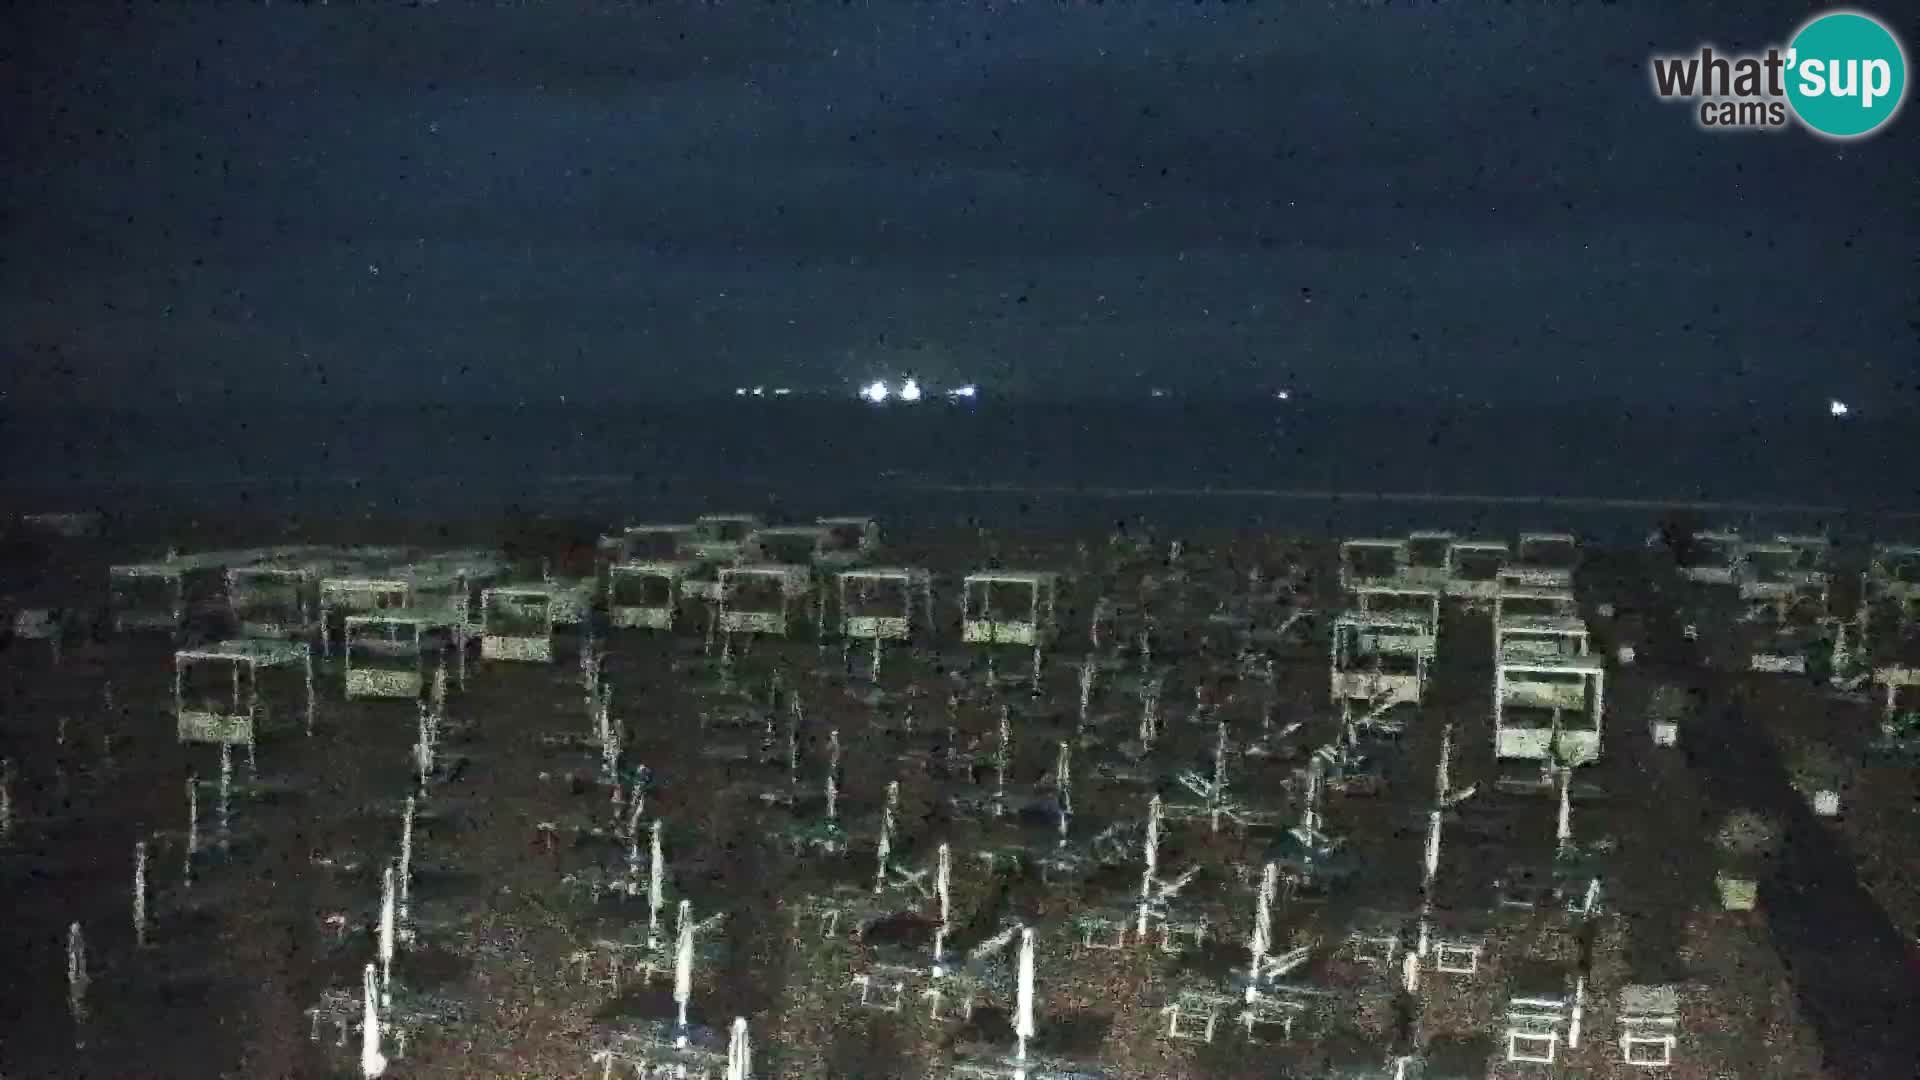 La plage de Bibione webcam en direct | Italien